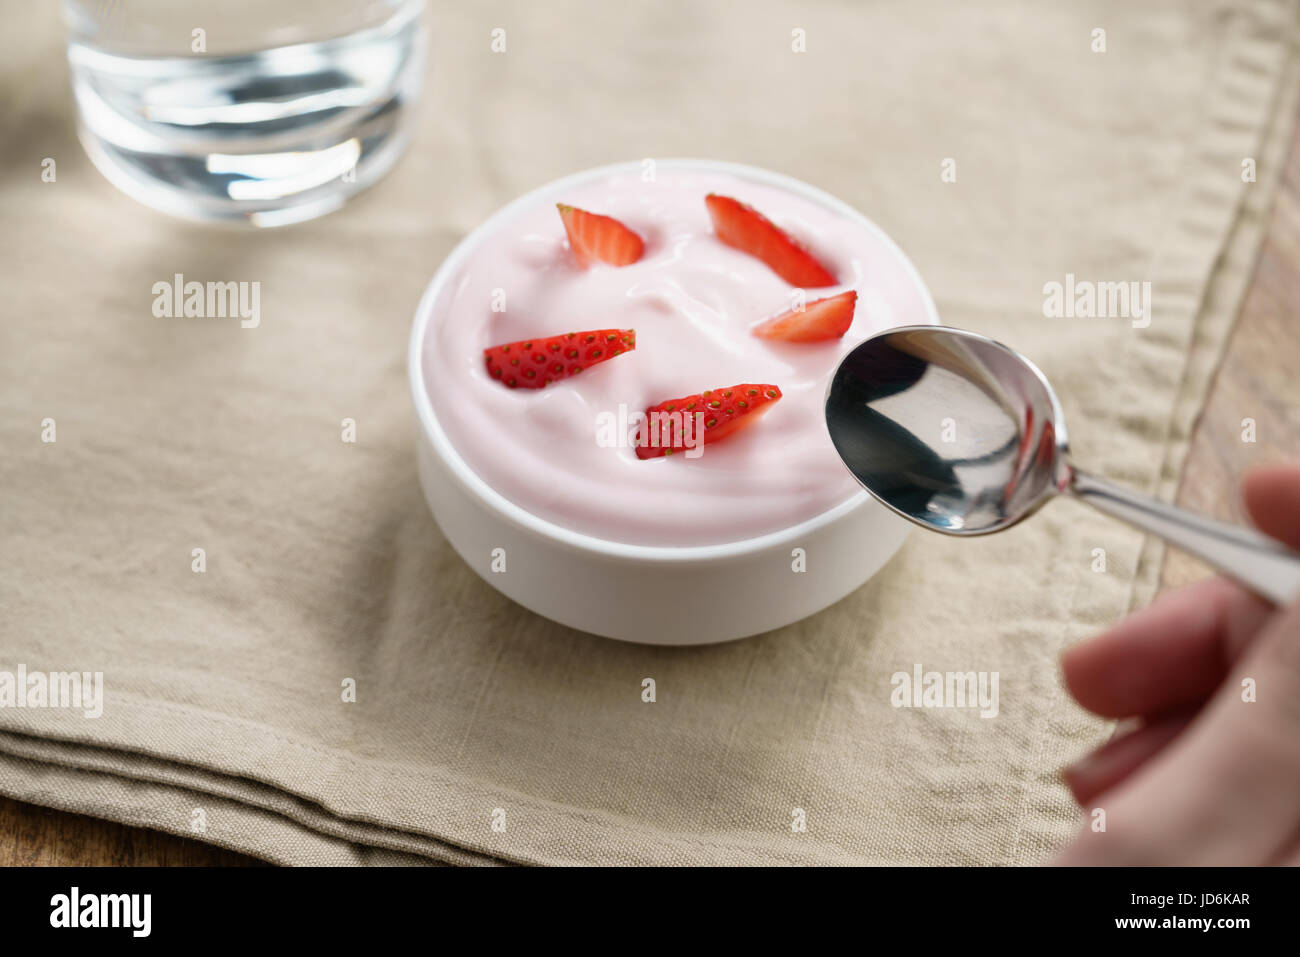 pov teen girl hand eating organic strawberry yogurt Stock Photo